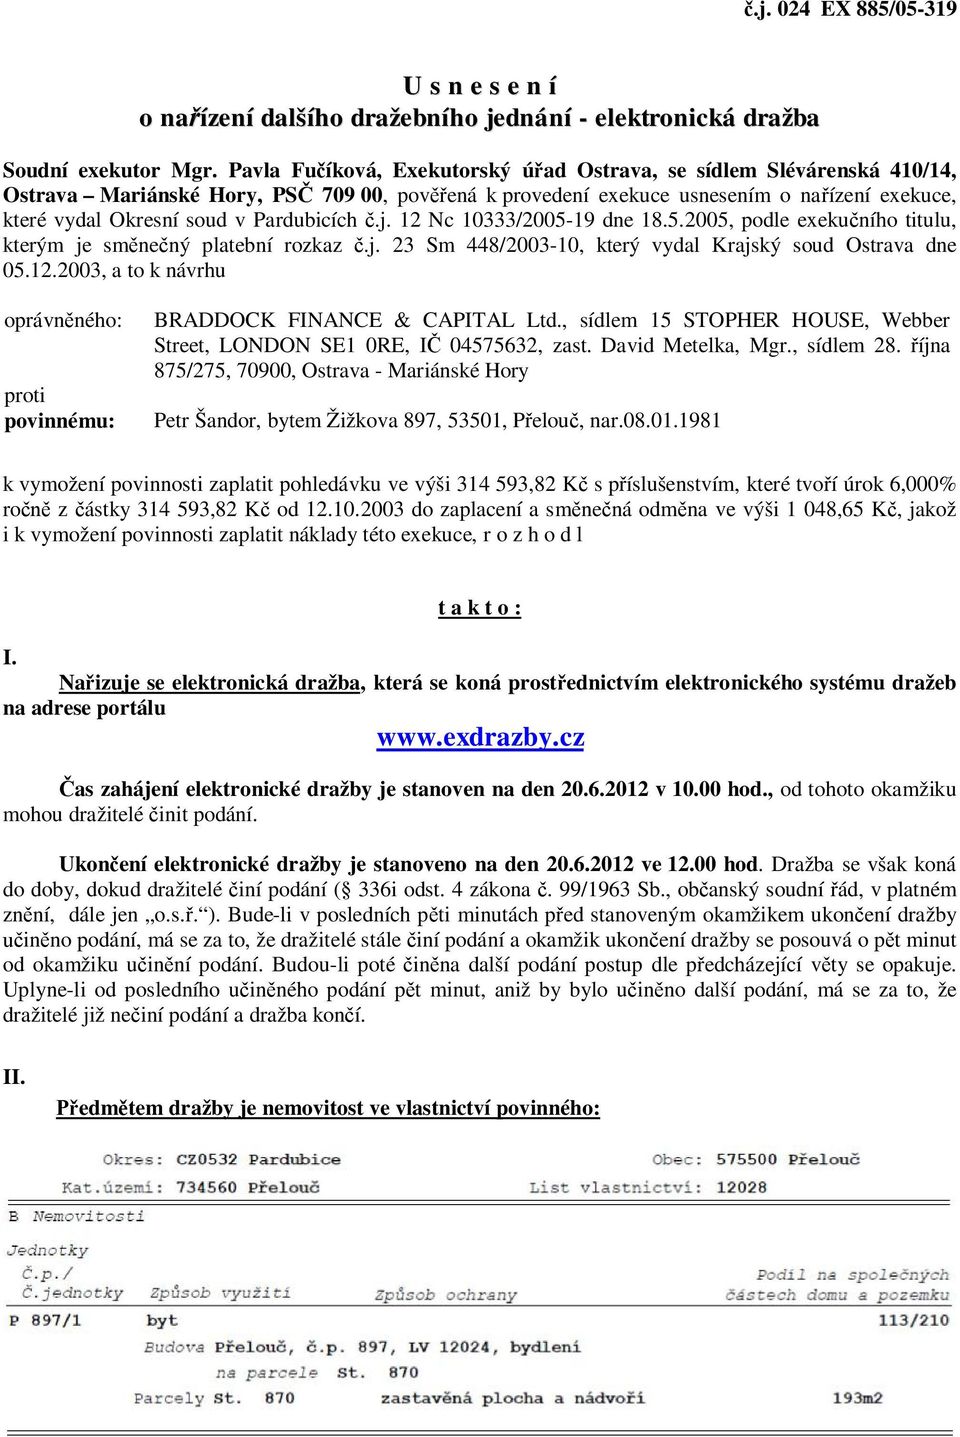 Pardubicích č.j. 12 Nc 10333/2005-19 dne 18.5.2005, podle exekučního titulu, kterým je směnečný platební rozkaz č.j. 23 Sm 448/2003-10, který vydal Krajský soud Ostrava dne 05.12.2003, a to k návrhu oprávněného: proti povinnému: BRADDOCK FINANCE & CAPITAL Ltd.